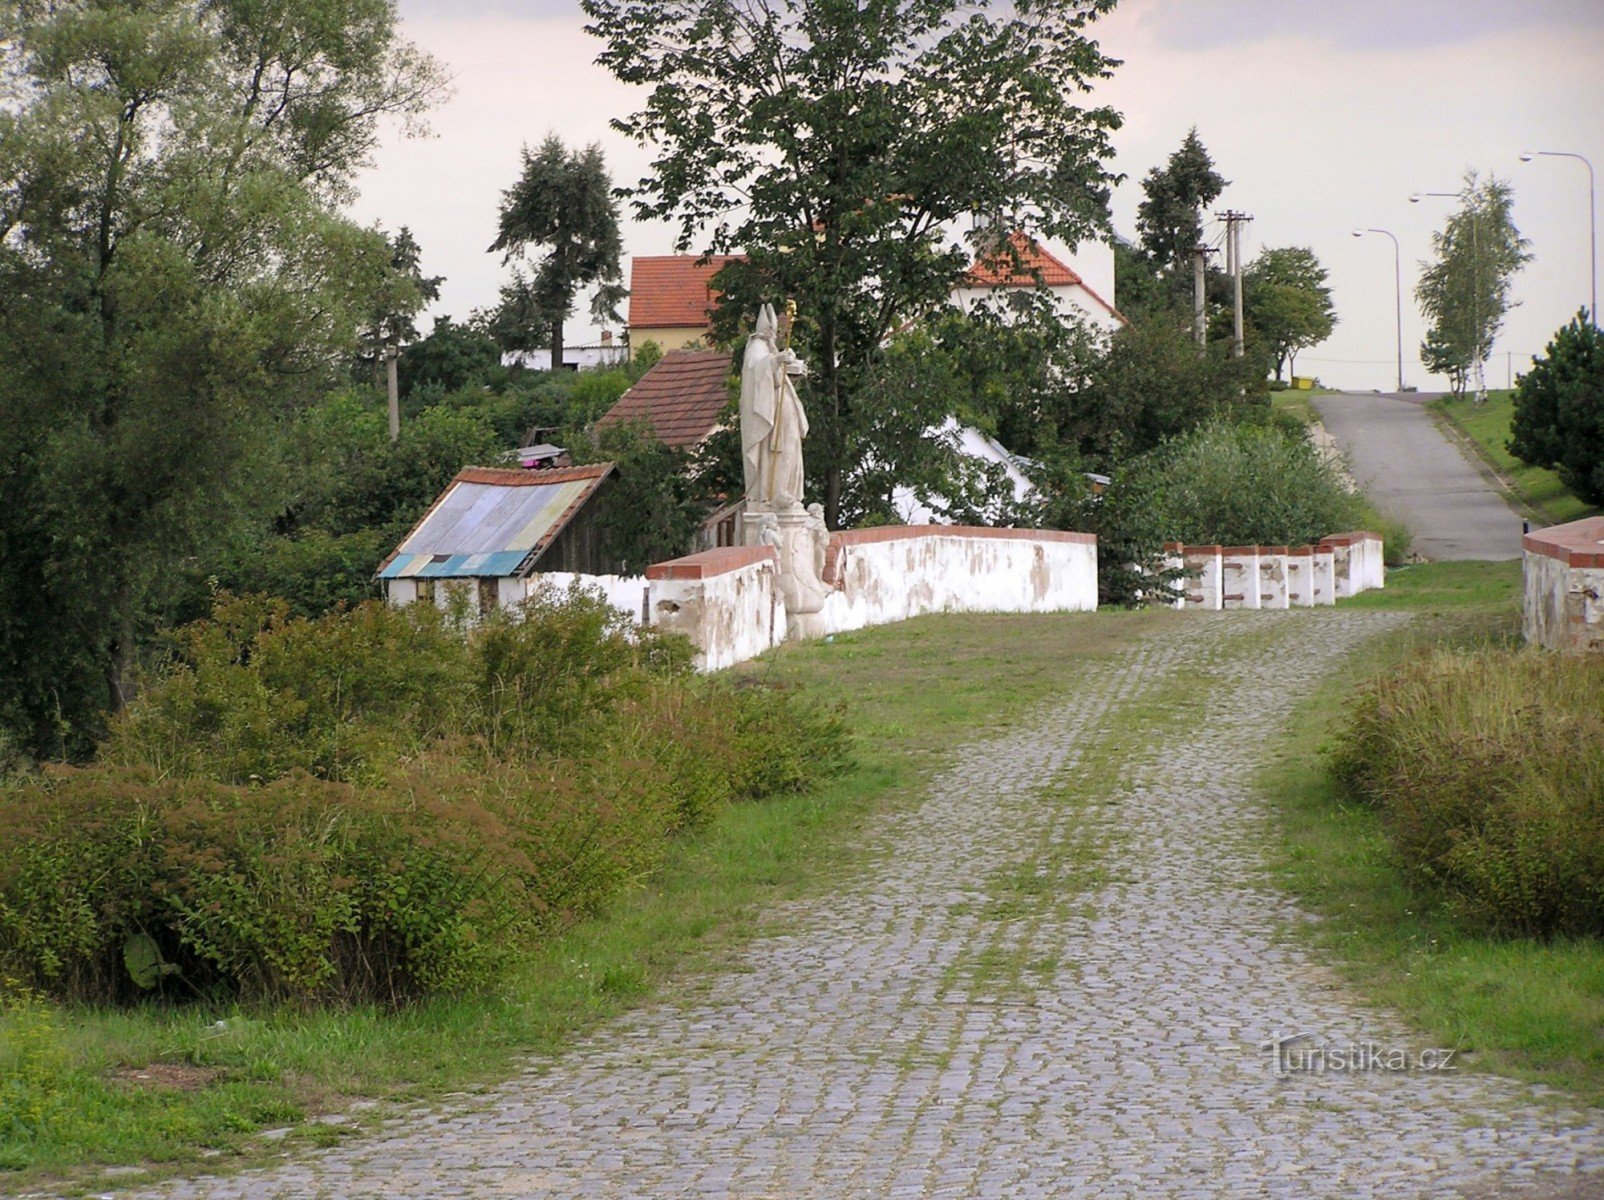 une section bien conservée de l'ancienne route goudronnée impériale avec un pont (une statue de Saint-Nicolas dessus)